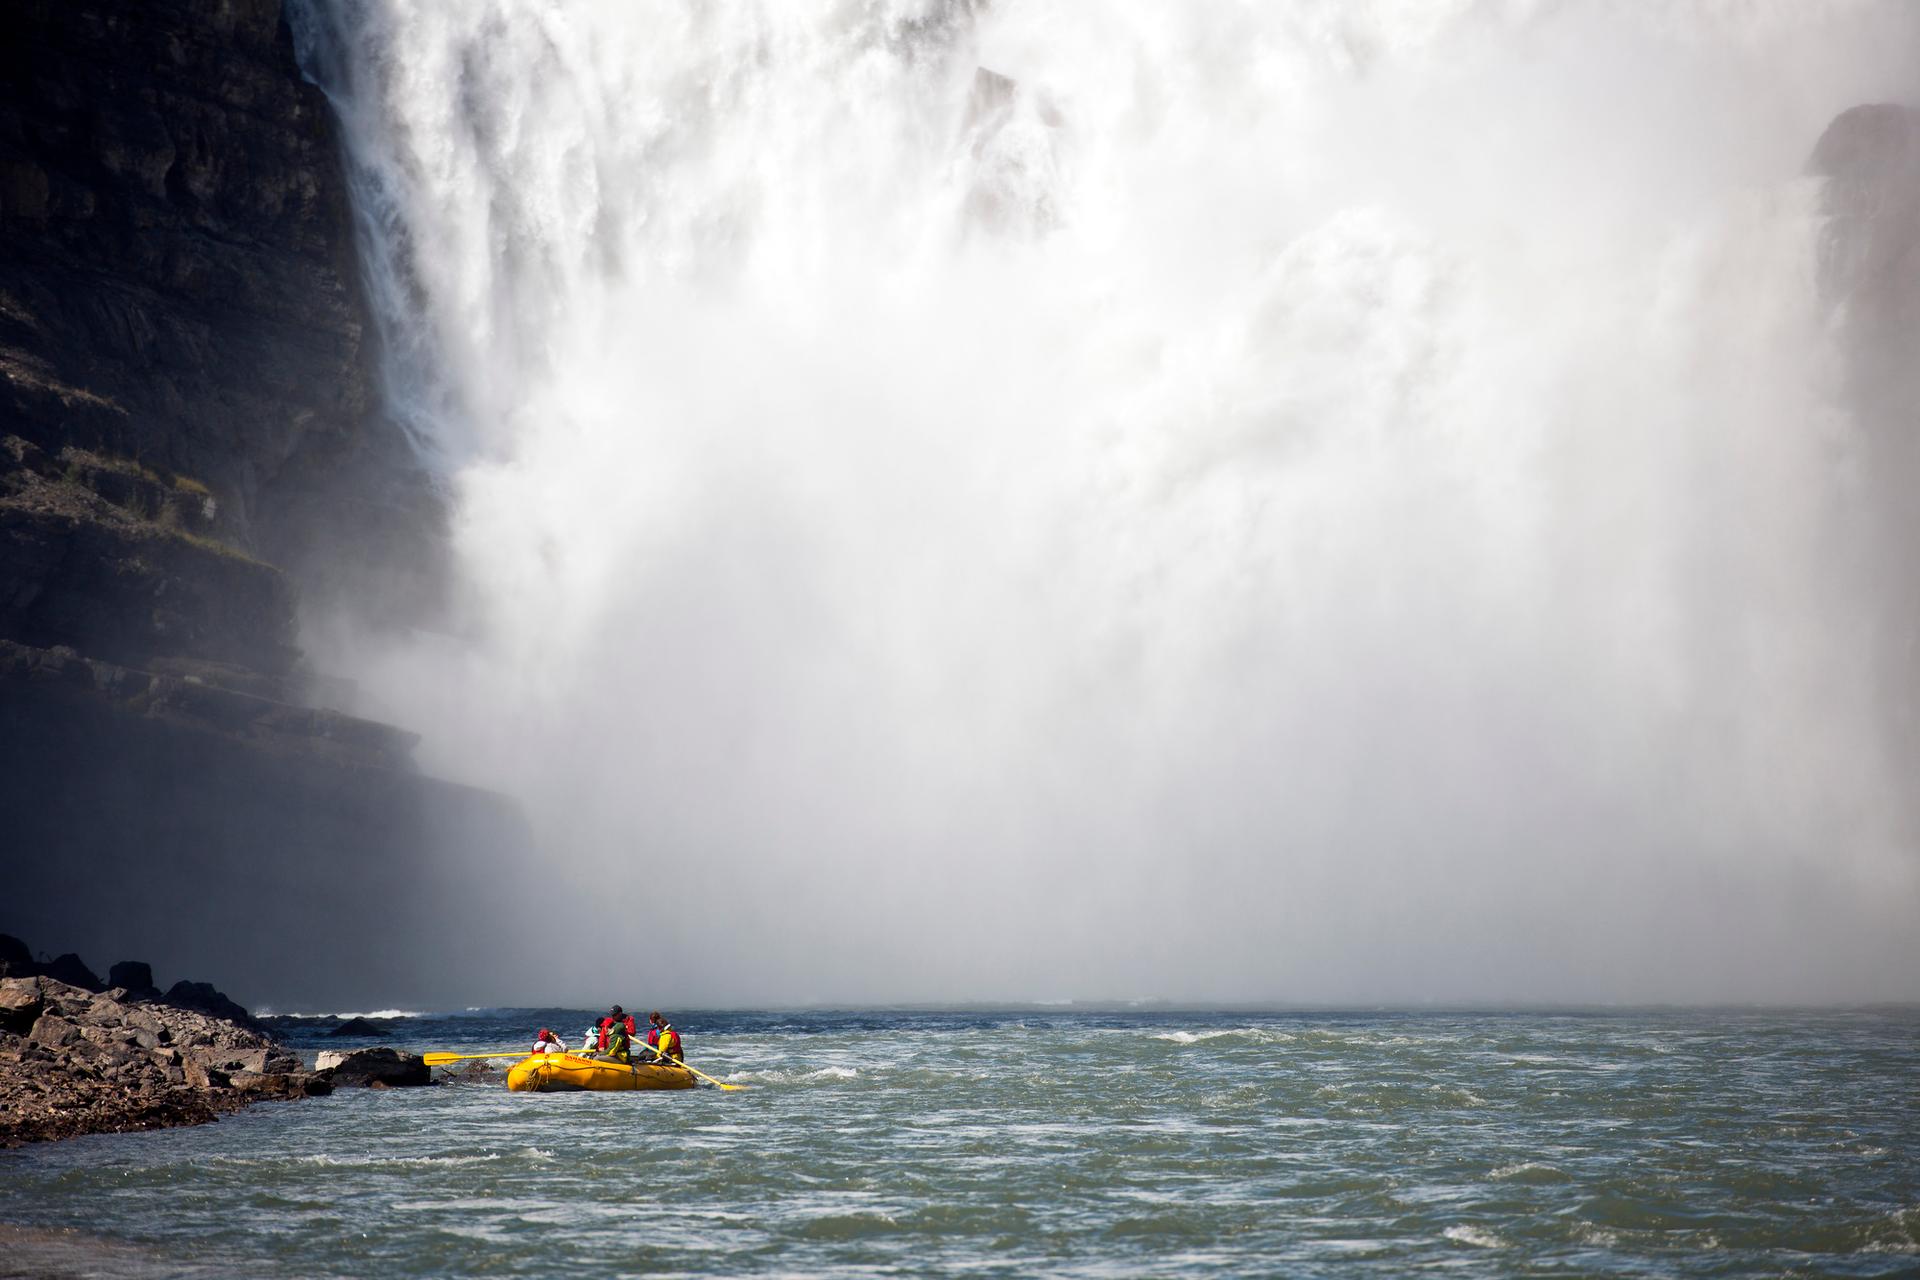 A group paddling a large kayak near a waterfall